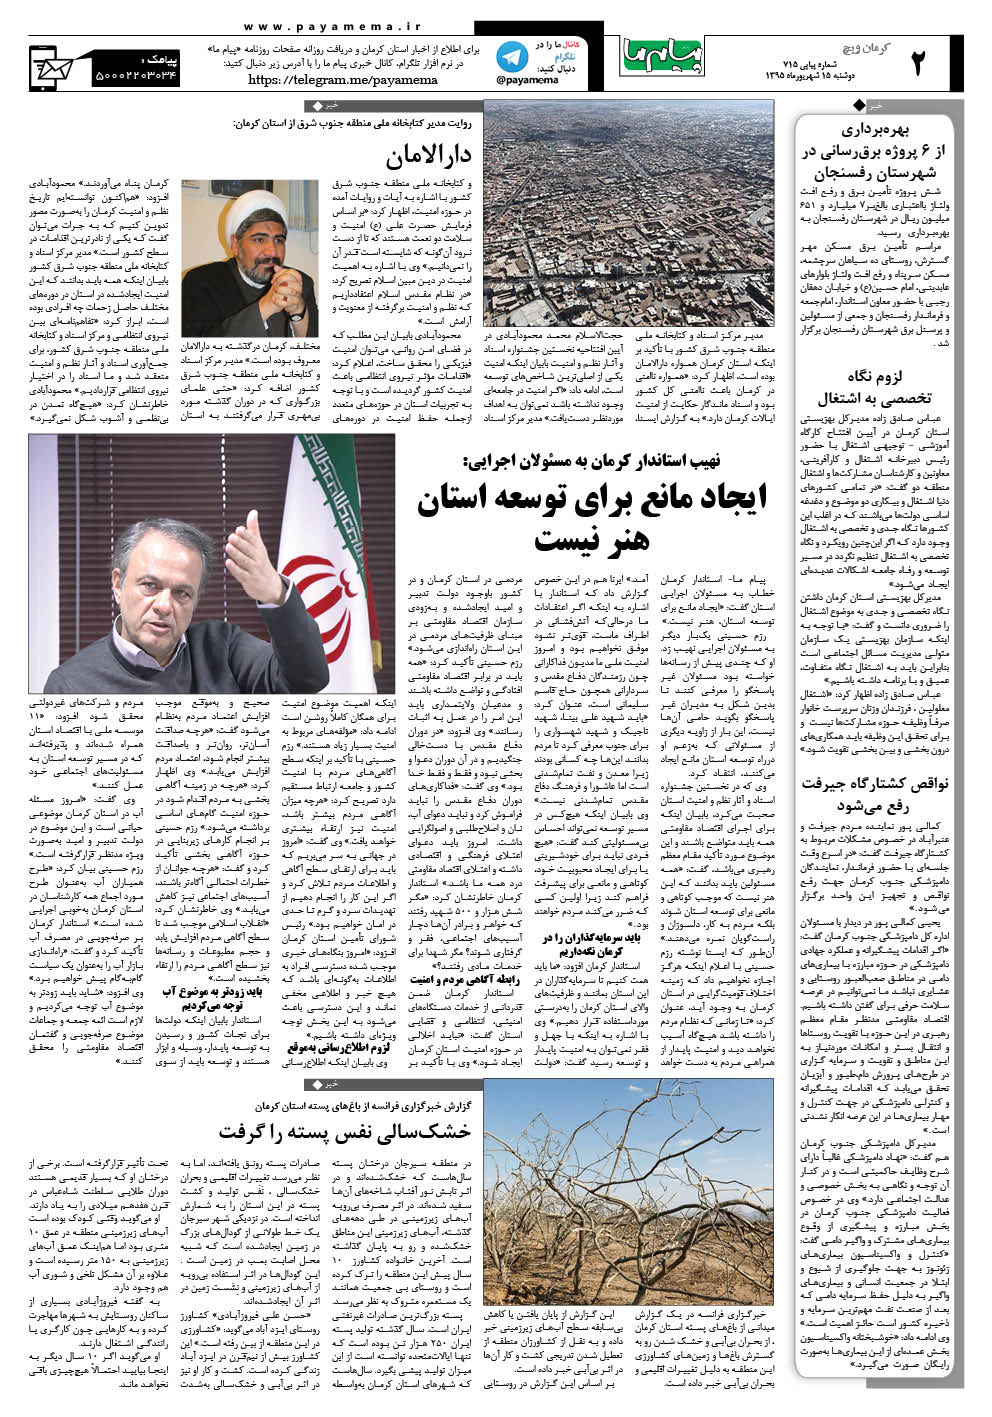 صفحه کرمان ویج شماره 715 روزنامه پیام ما